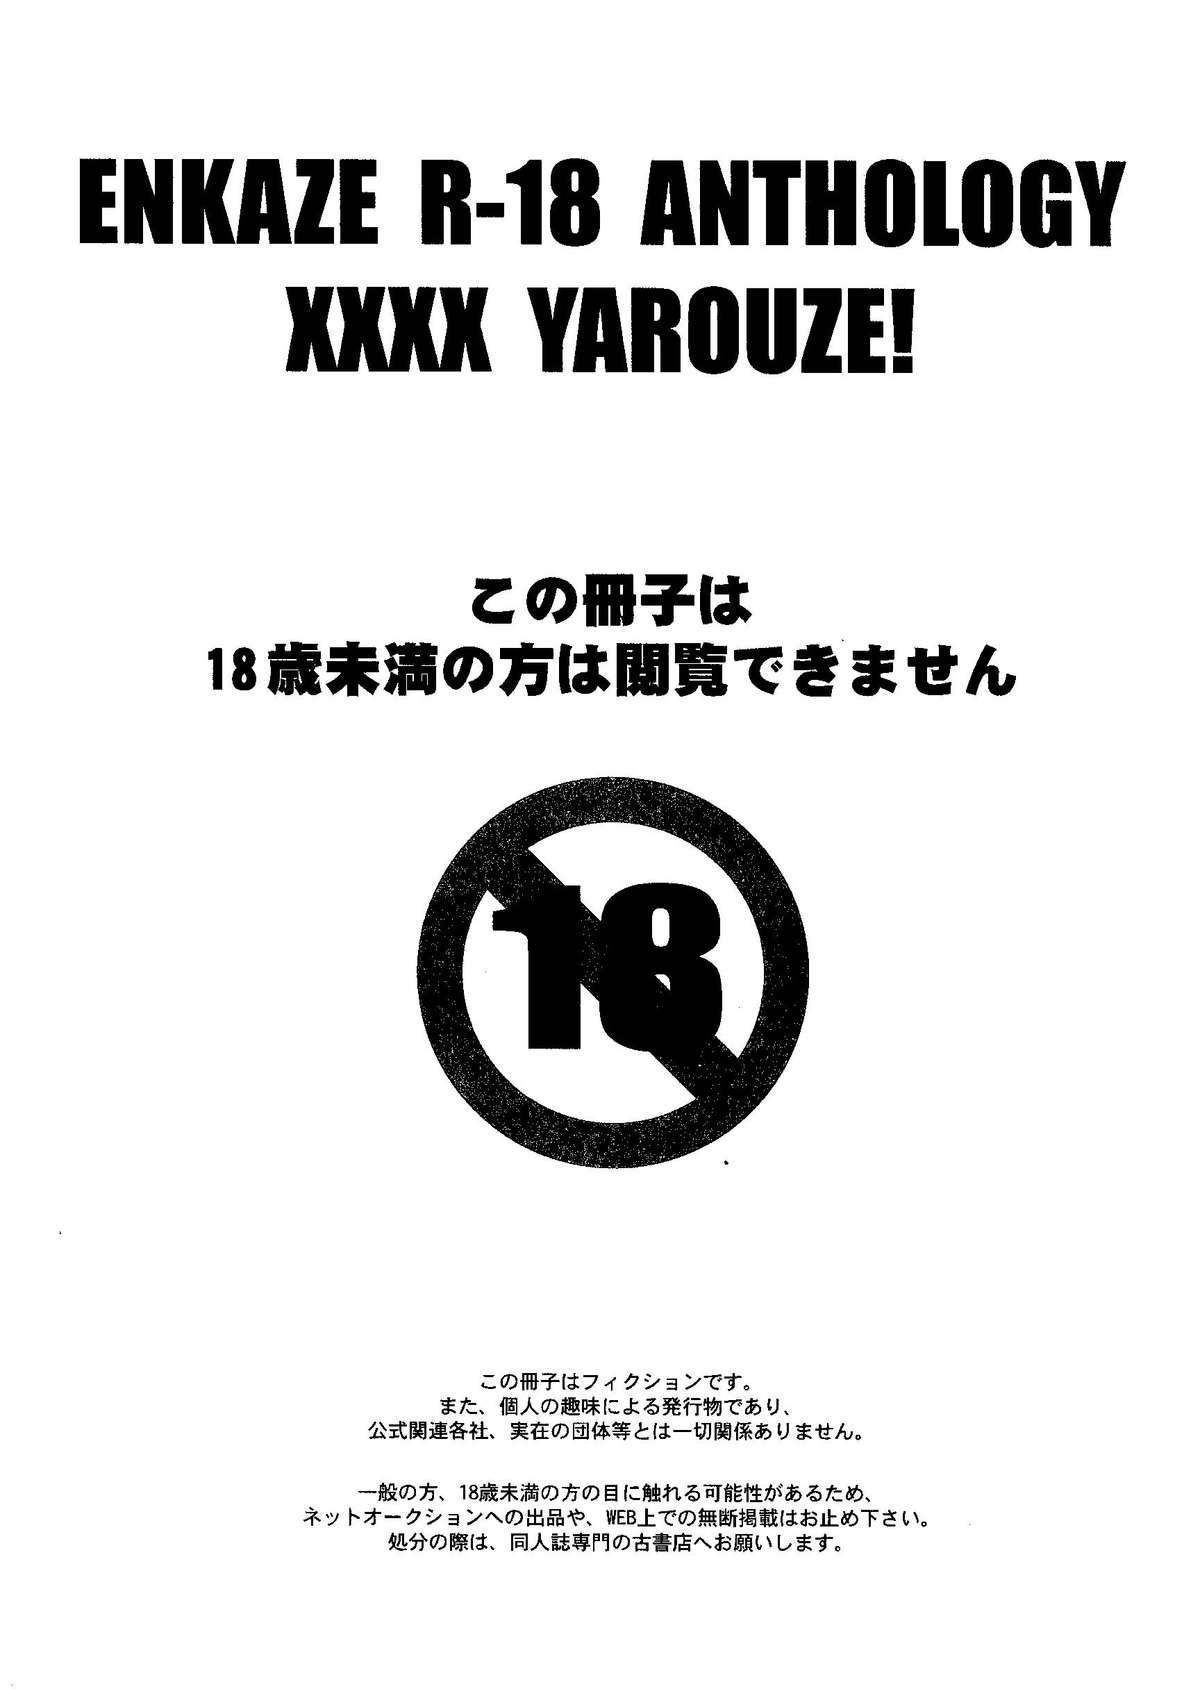 Exposed Kirigakure Takaya (Aniki Otokodou) - ×××× Yarouze! (Inazuma Eleven) - Inazuma eleven Youth Porn - Page 7